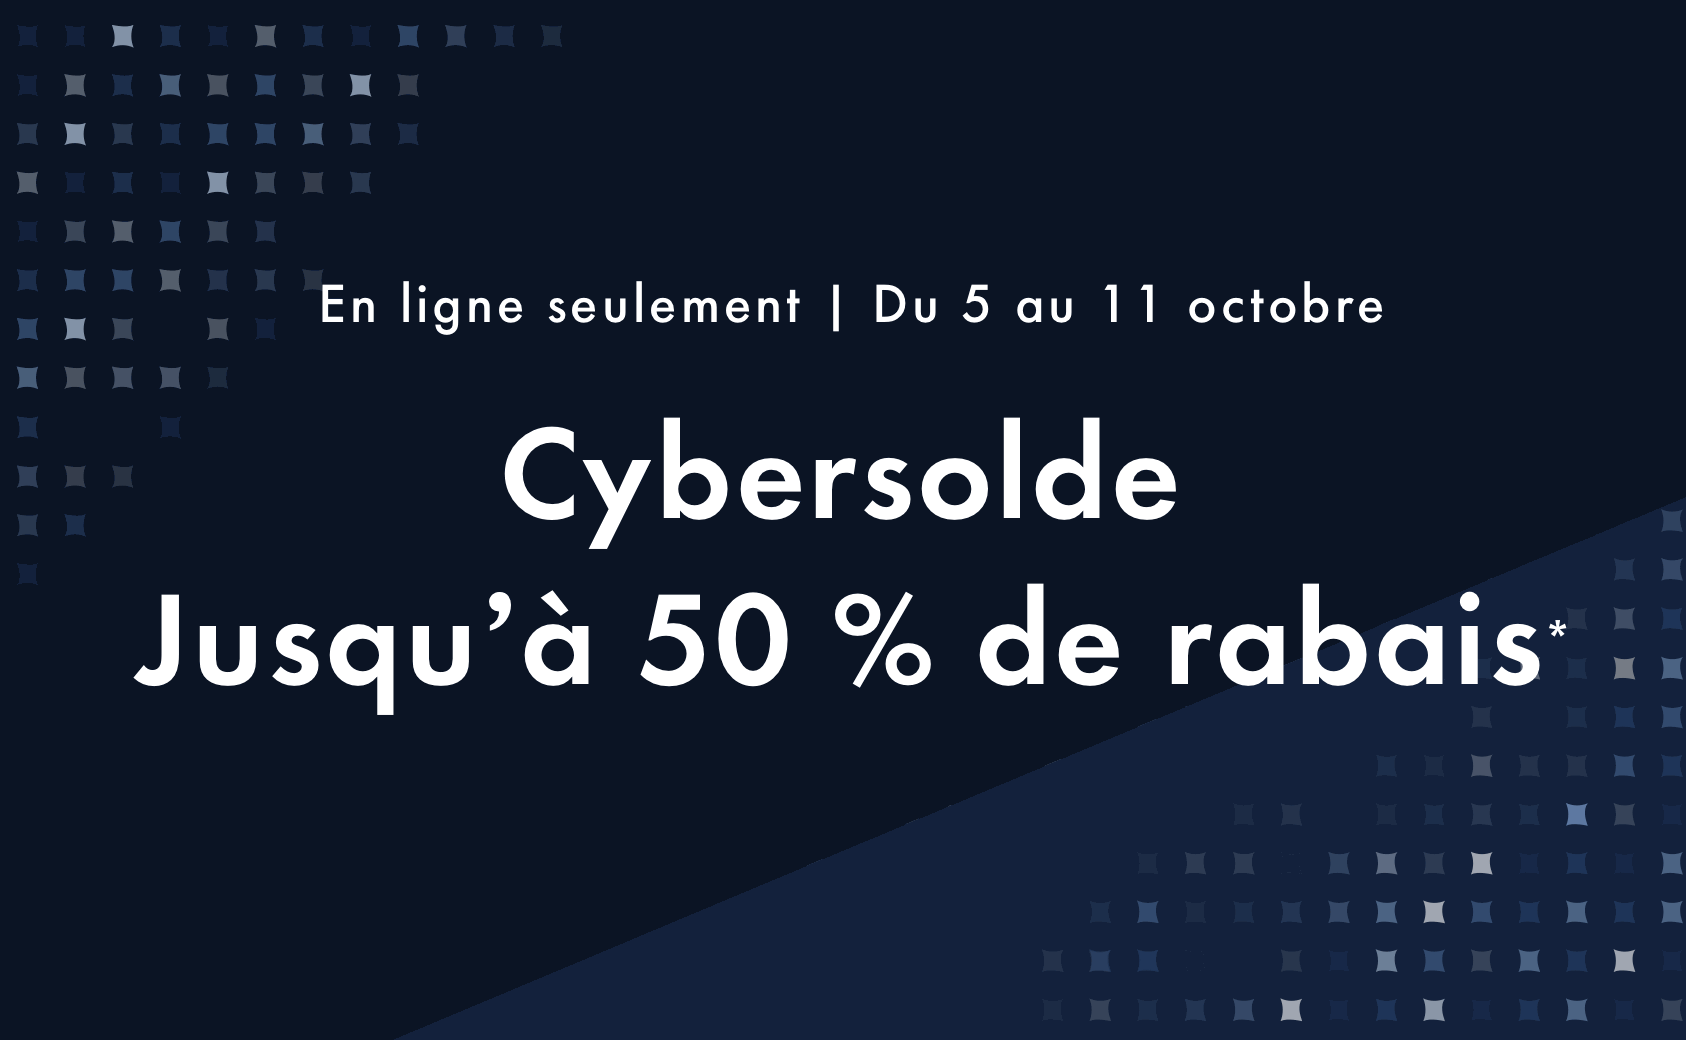 Cybersolde - Du 5 au 11 octobre 2020